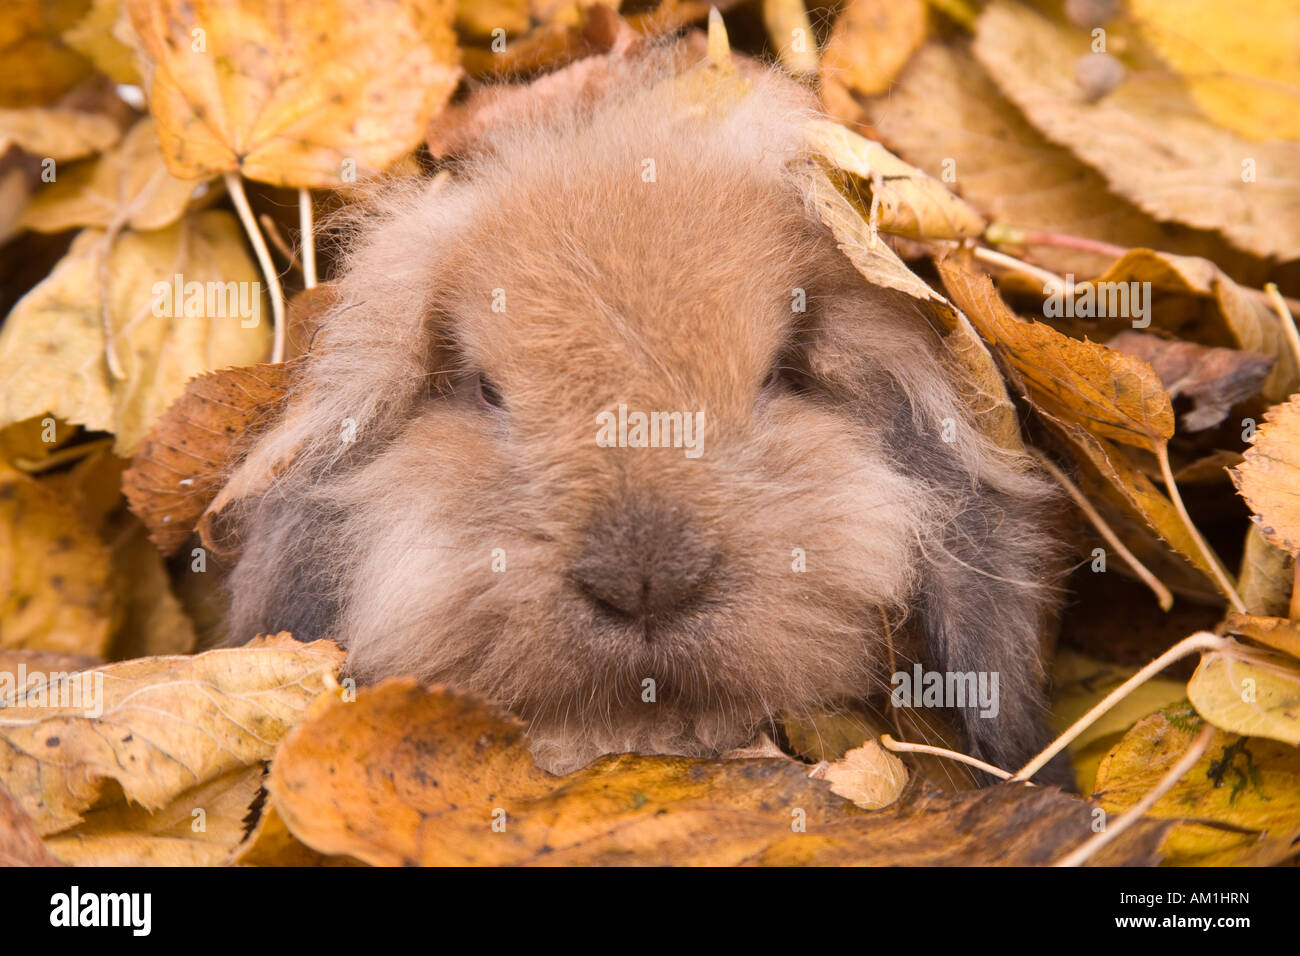 Rabbit in autumn foliage Stock Photo